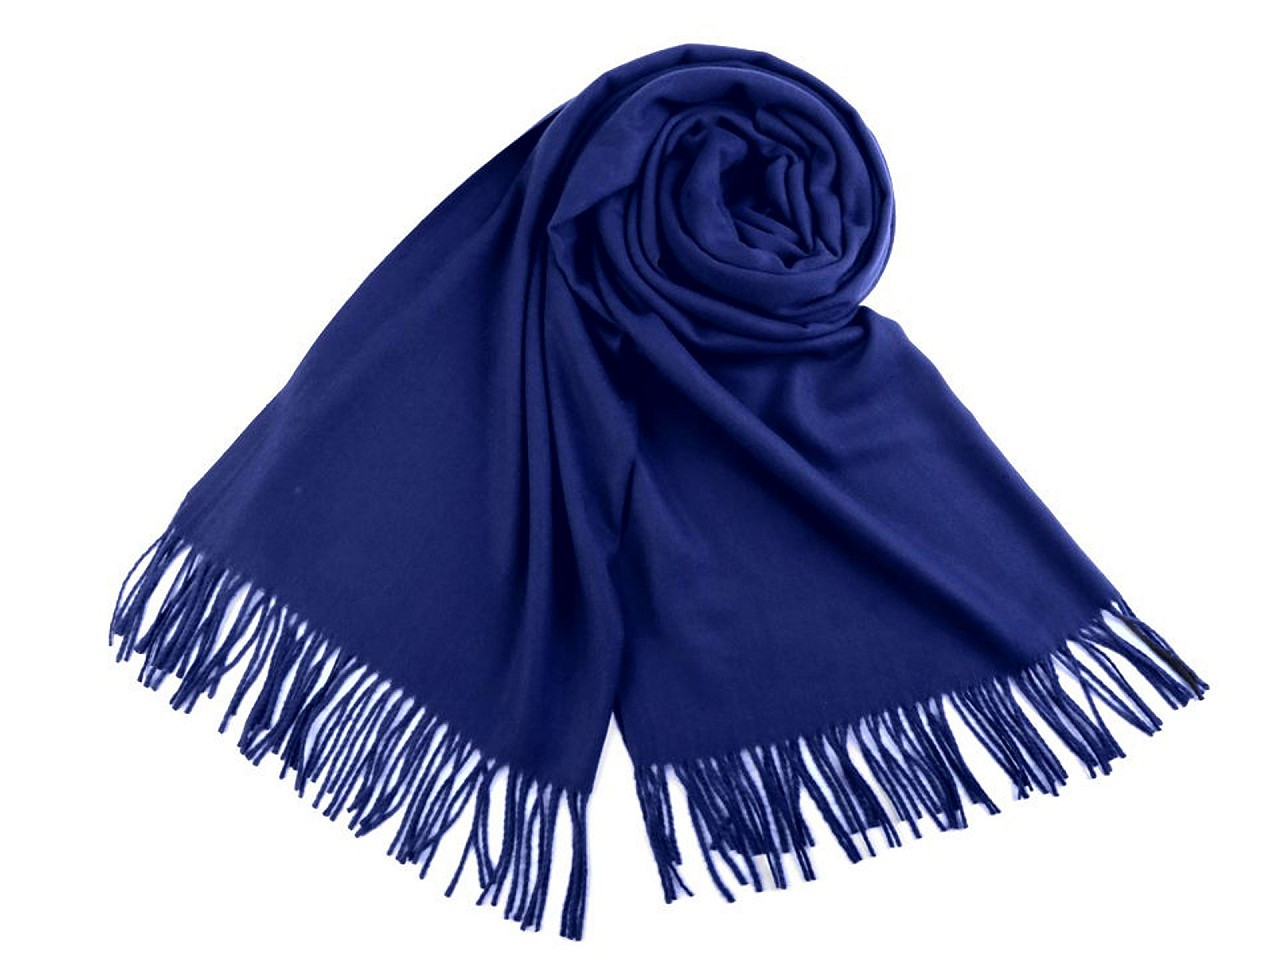 Šátek / šála typu pashmina s třásněmi 65x180 cm, barva 30 (08) modrá královská